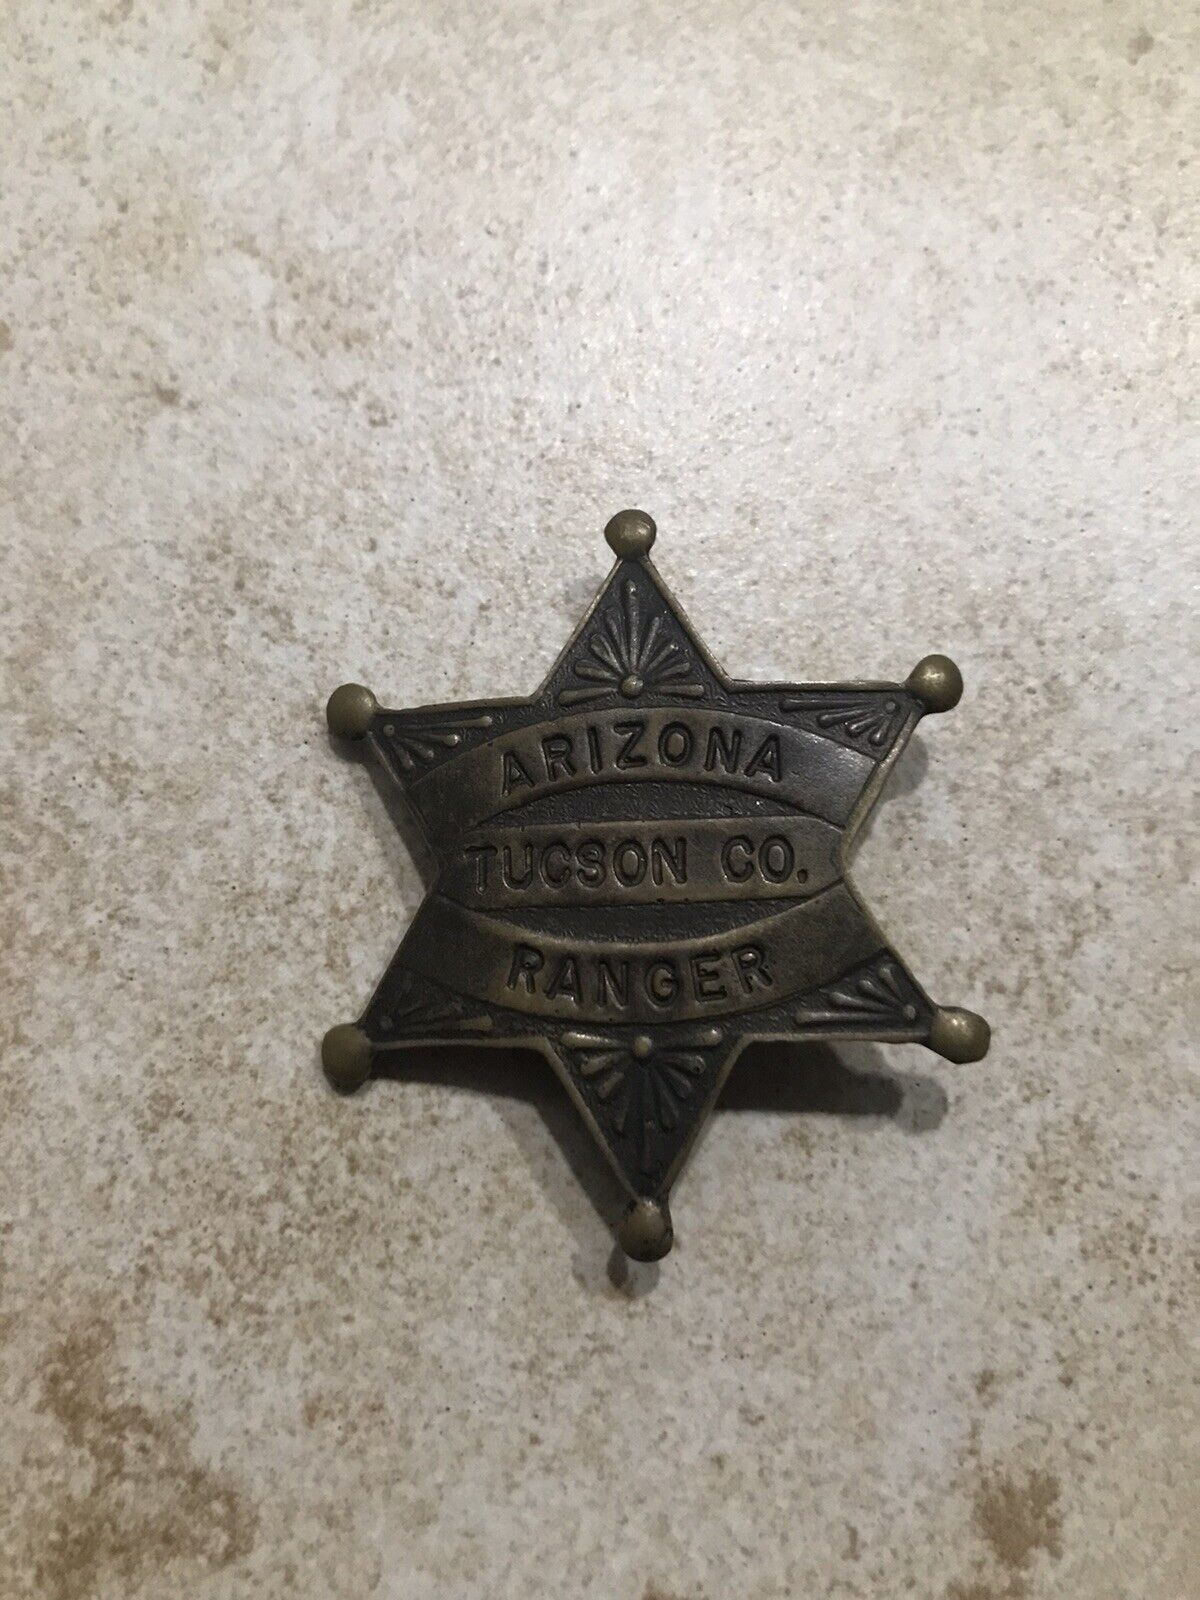 Obsolete Arizona Tucson Co. Ranger Badge